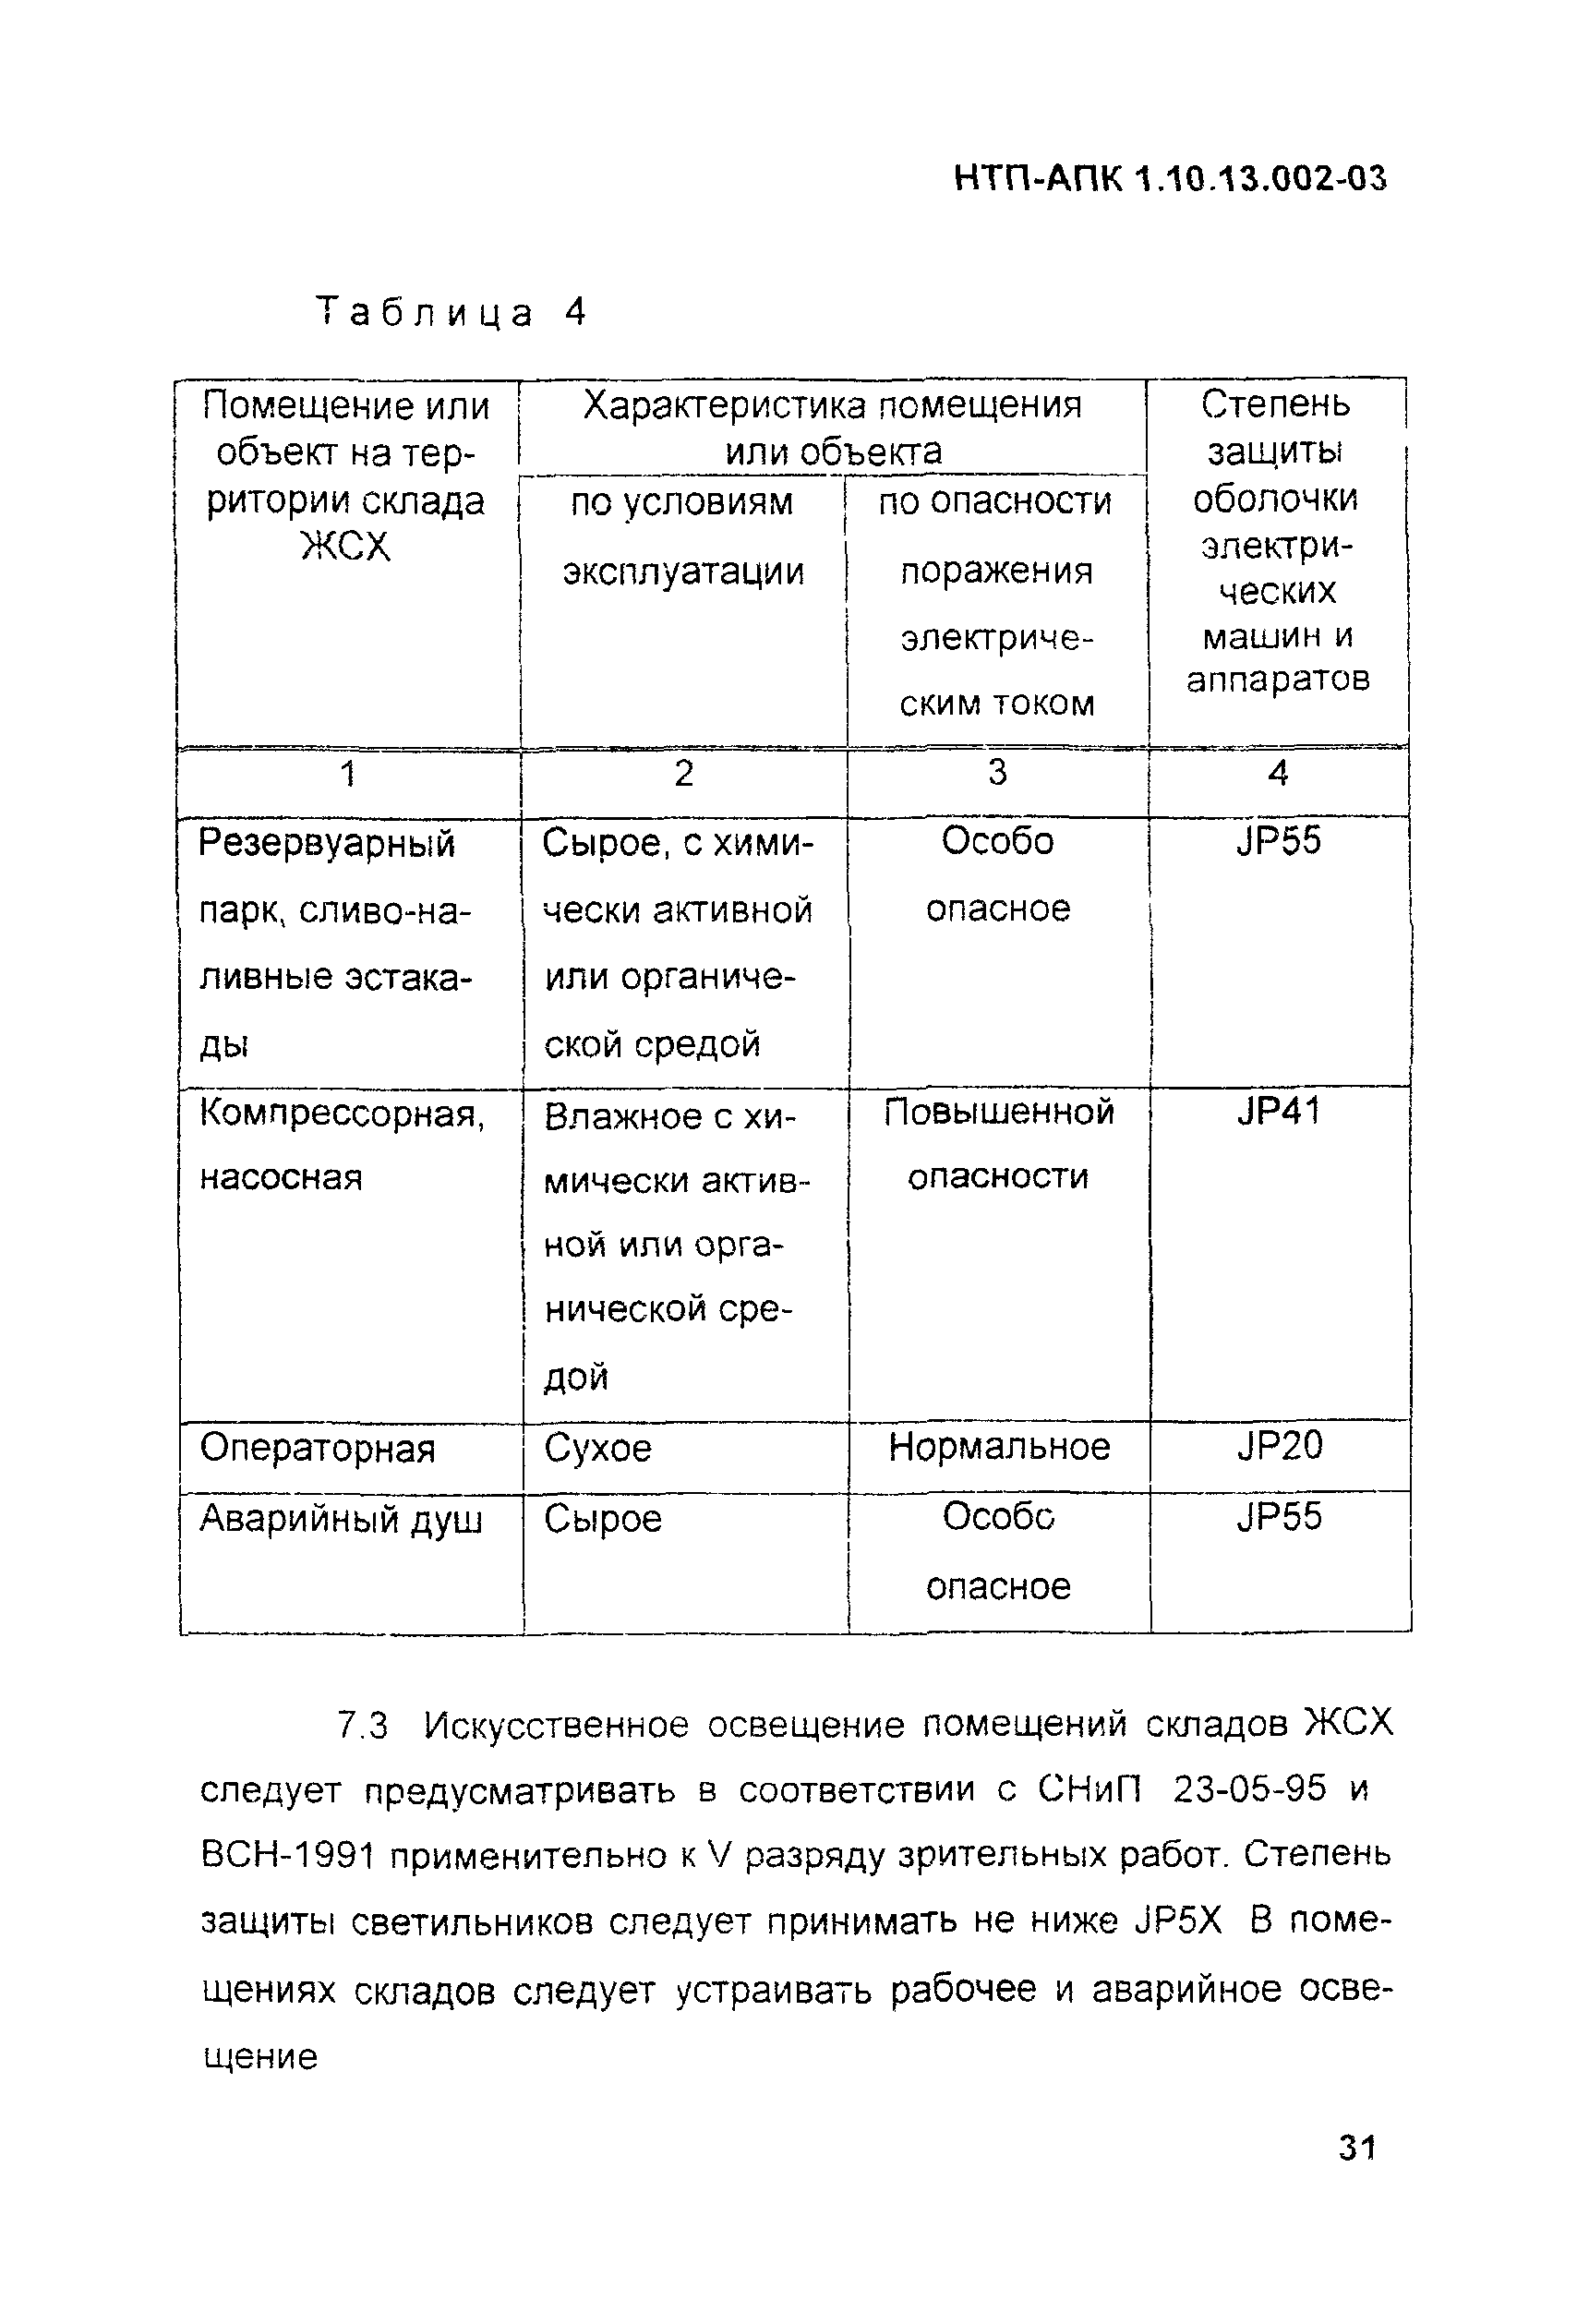 НТП АПК 1.10.13.002-03